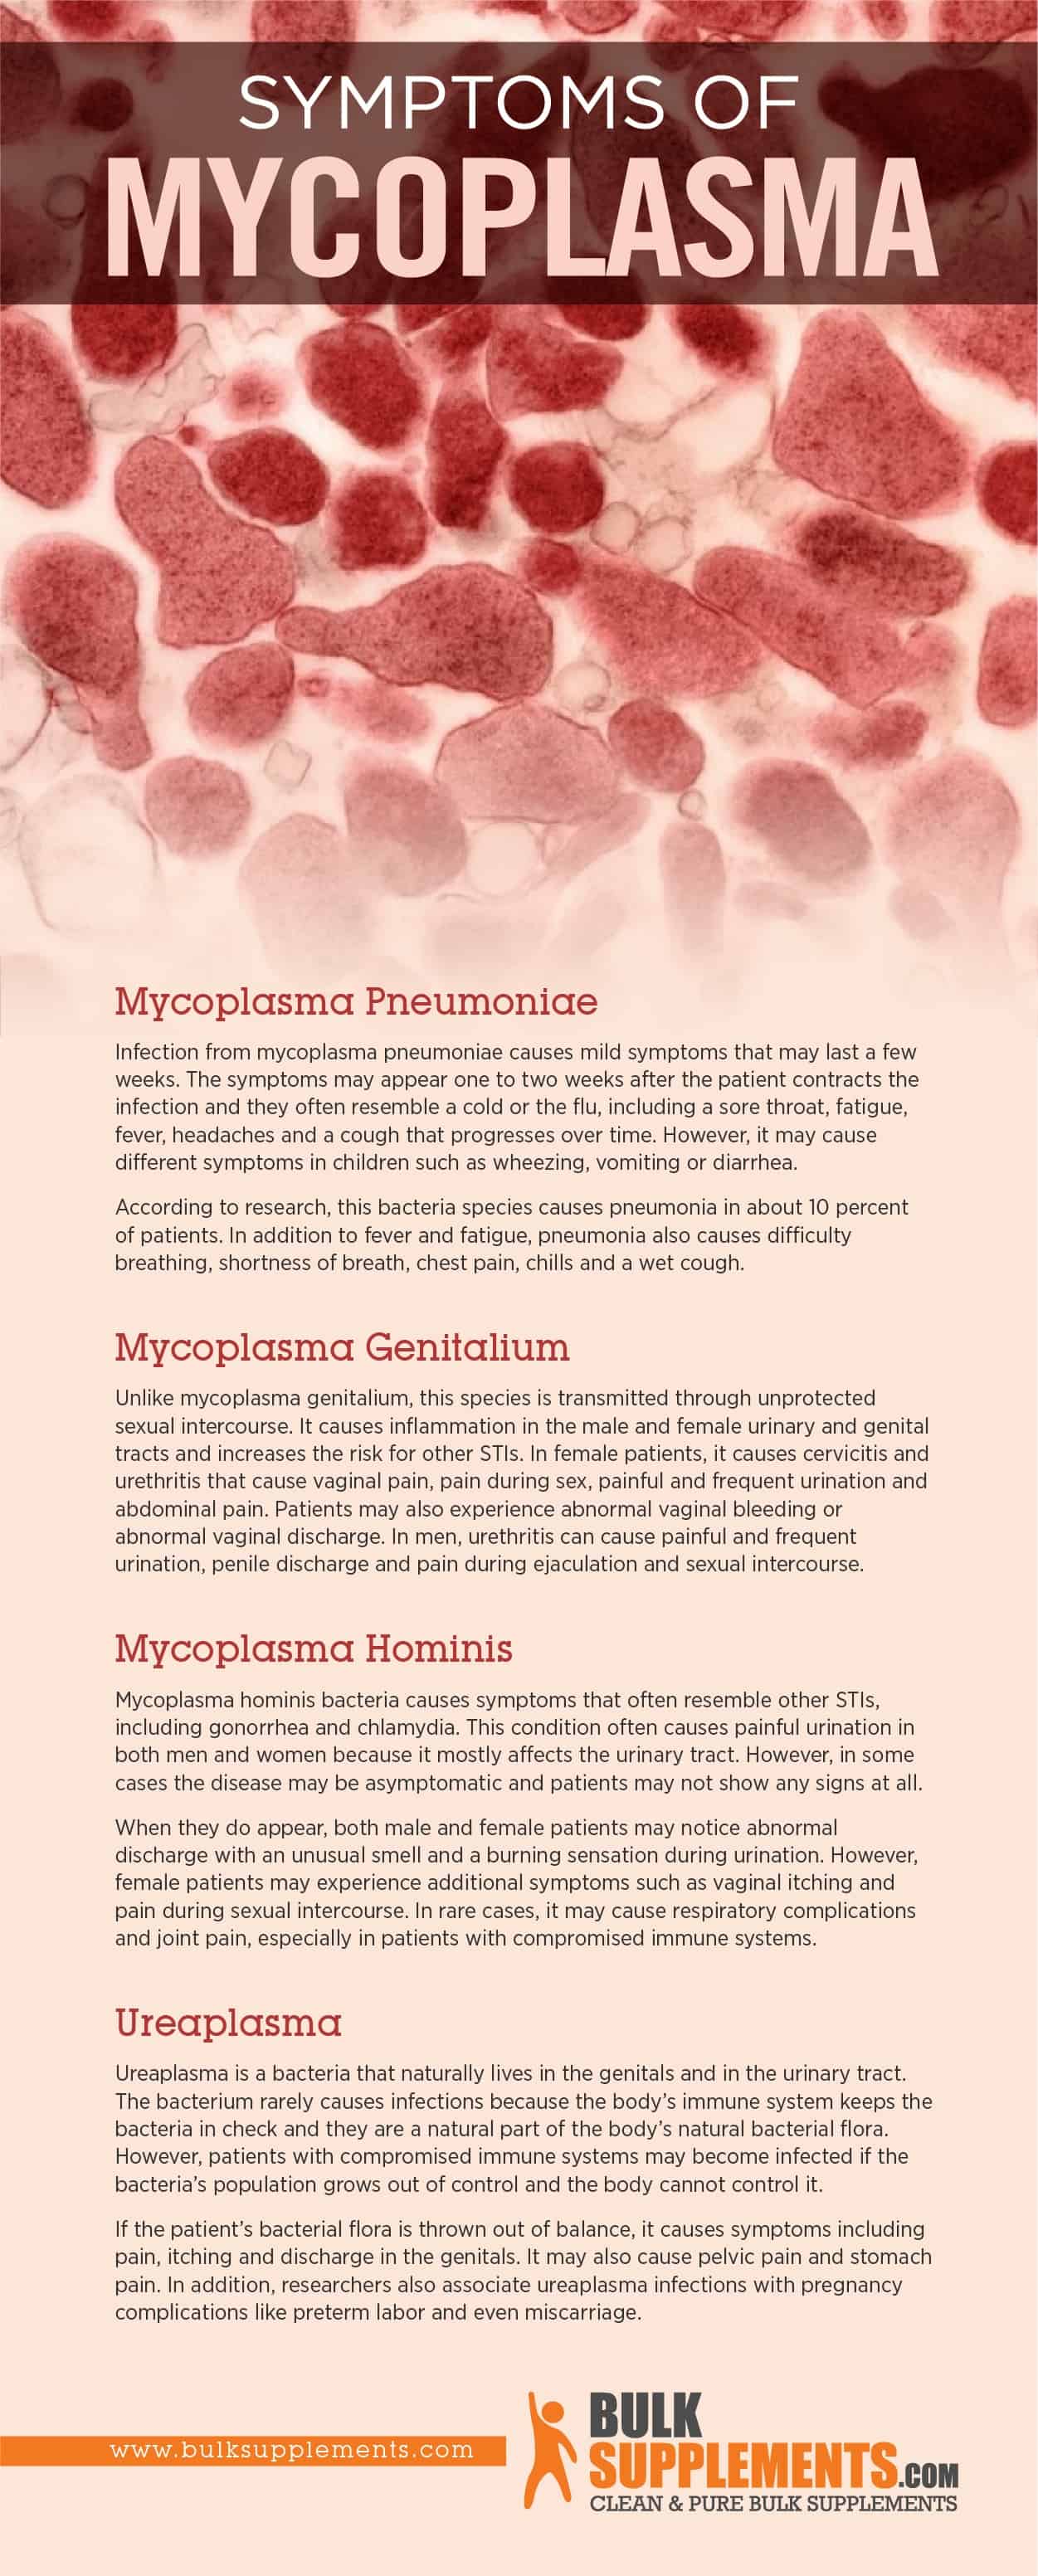 Symptoms of Mycoplasma